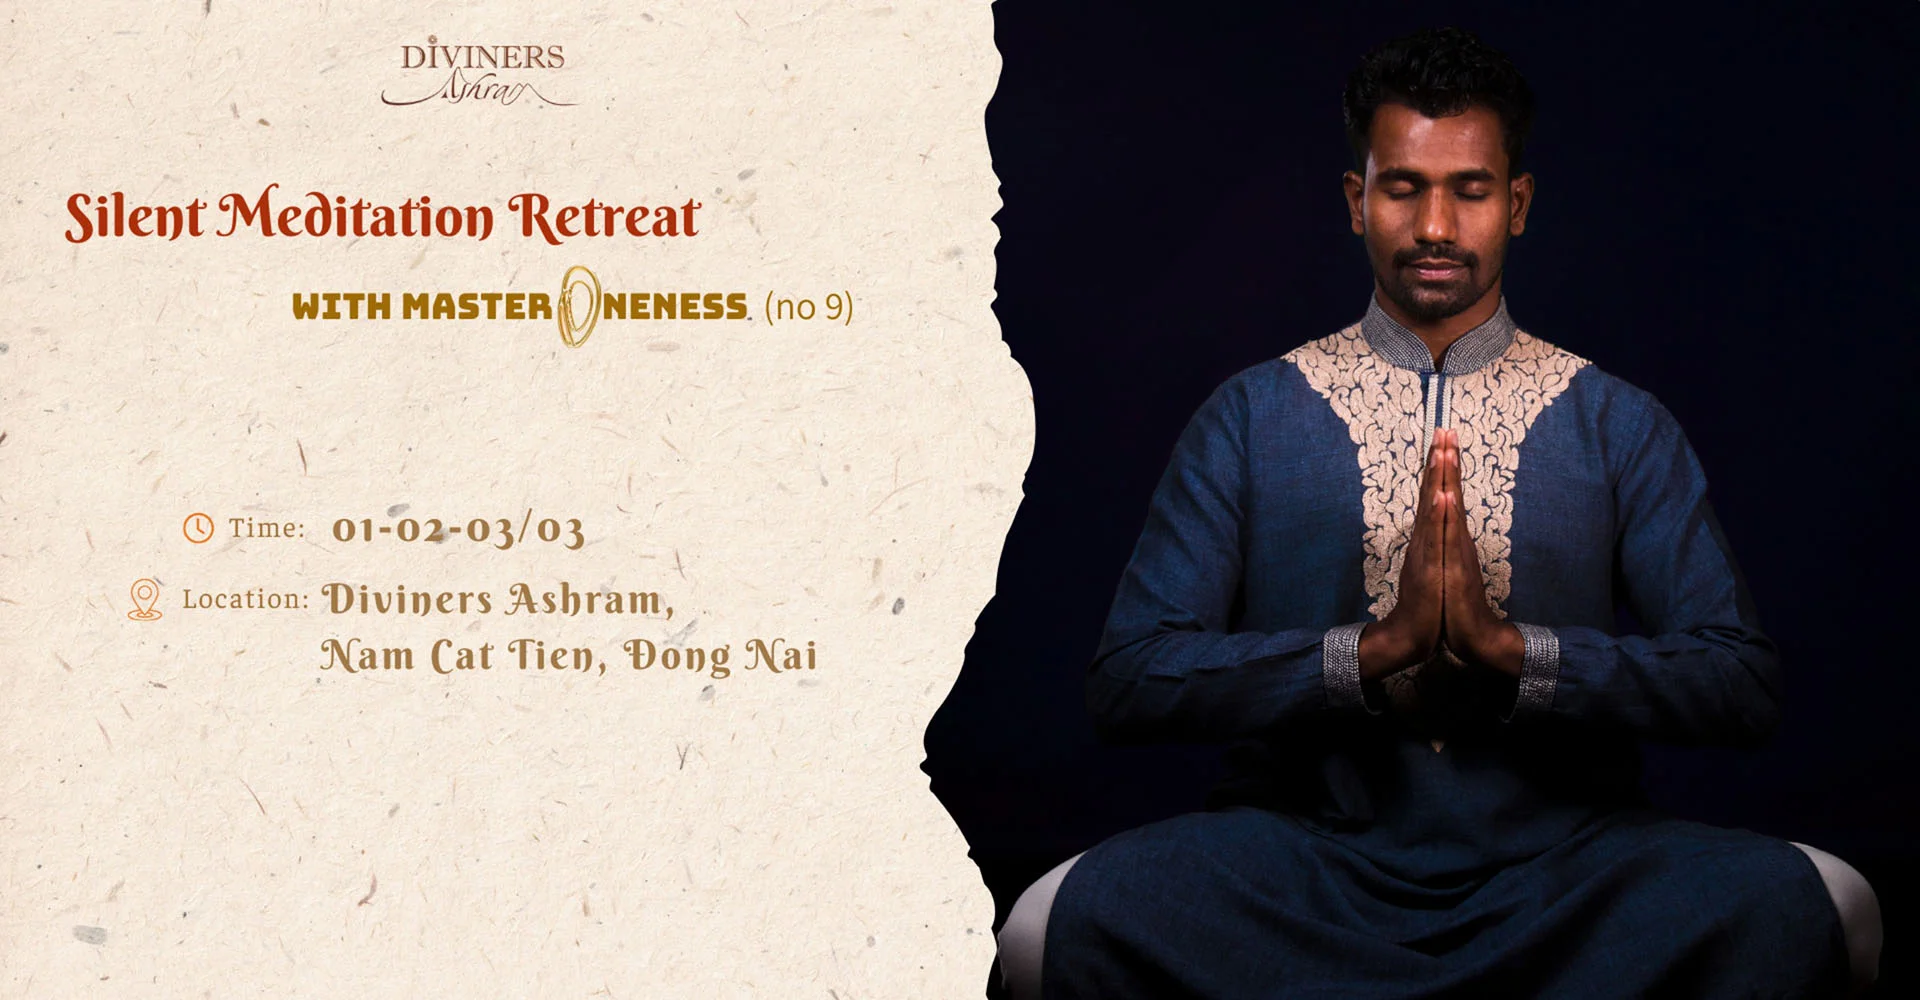 Diviners - silent meditation retreat - no 9